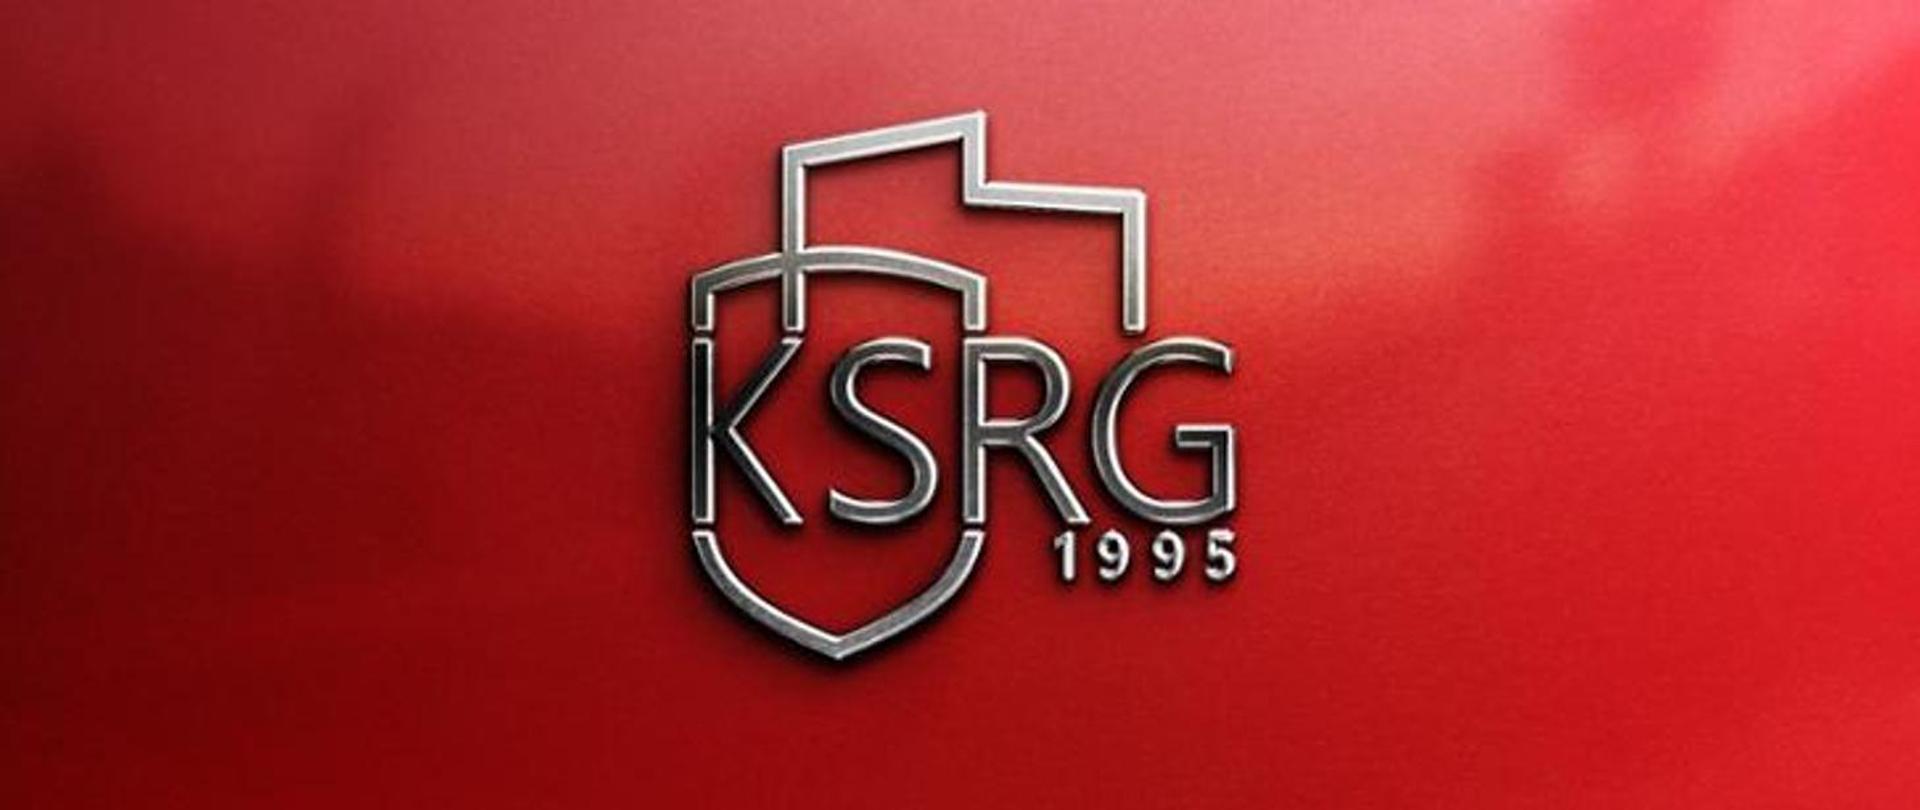 ksrg logotyp